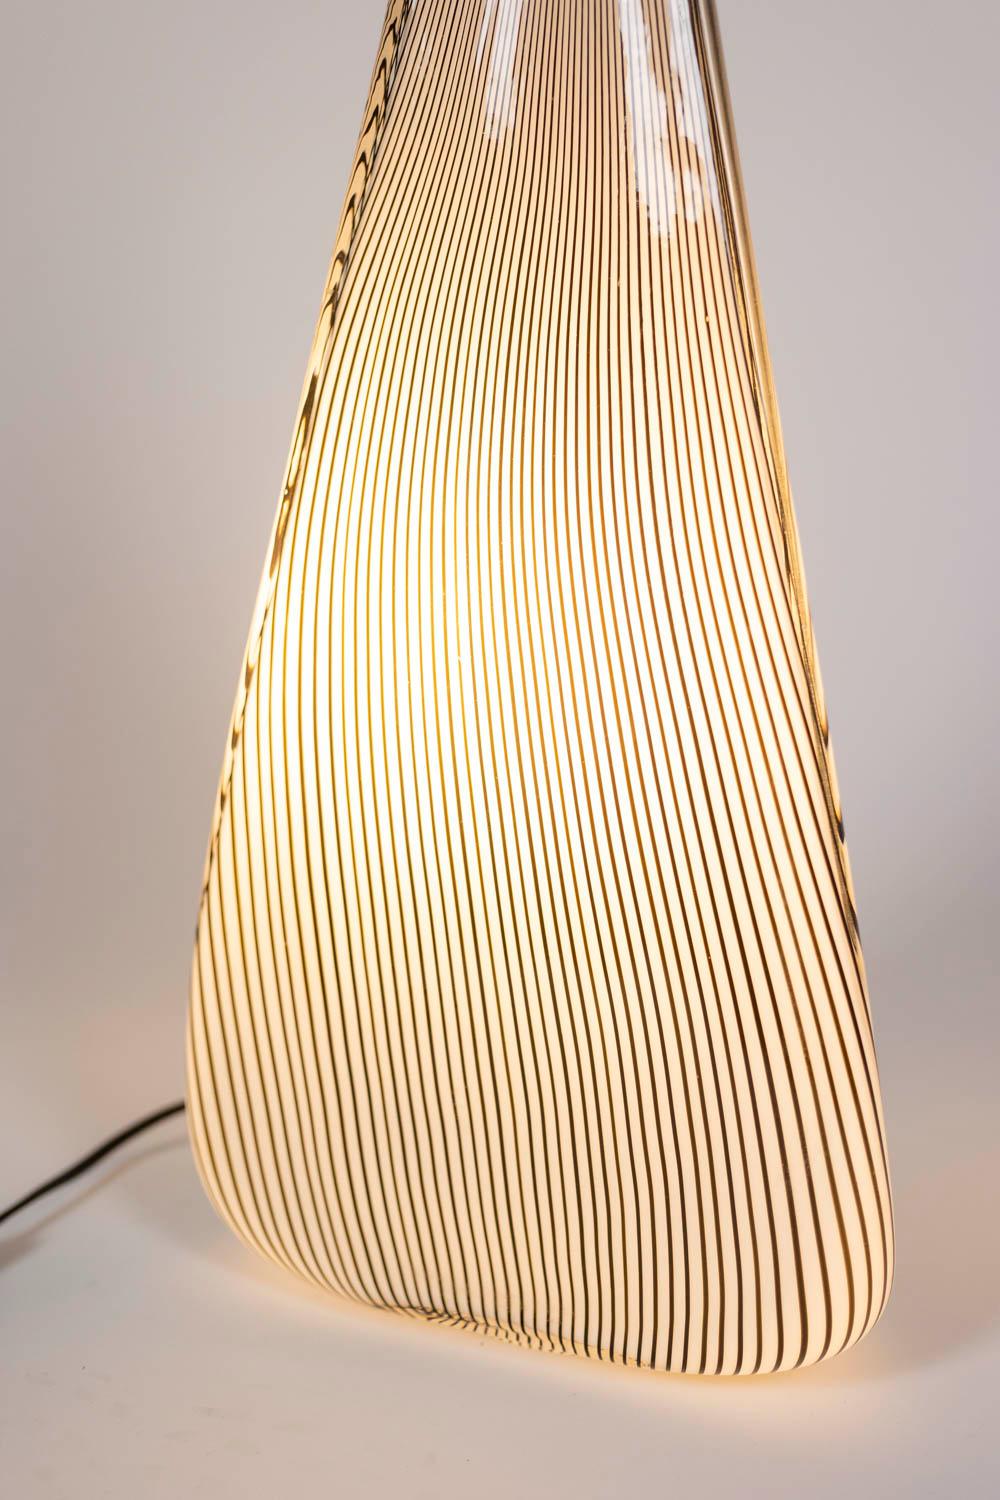 Italian Lino Tagliapietra, Murano Glass Lamp, 1970s For Sale